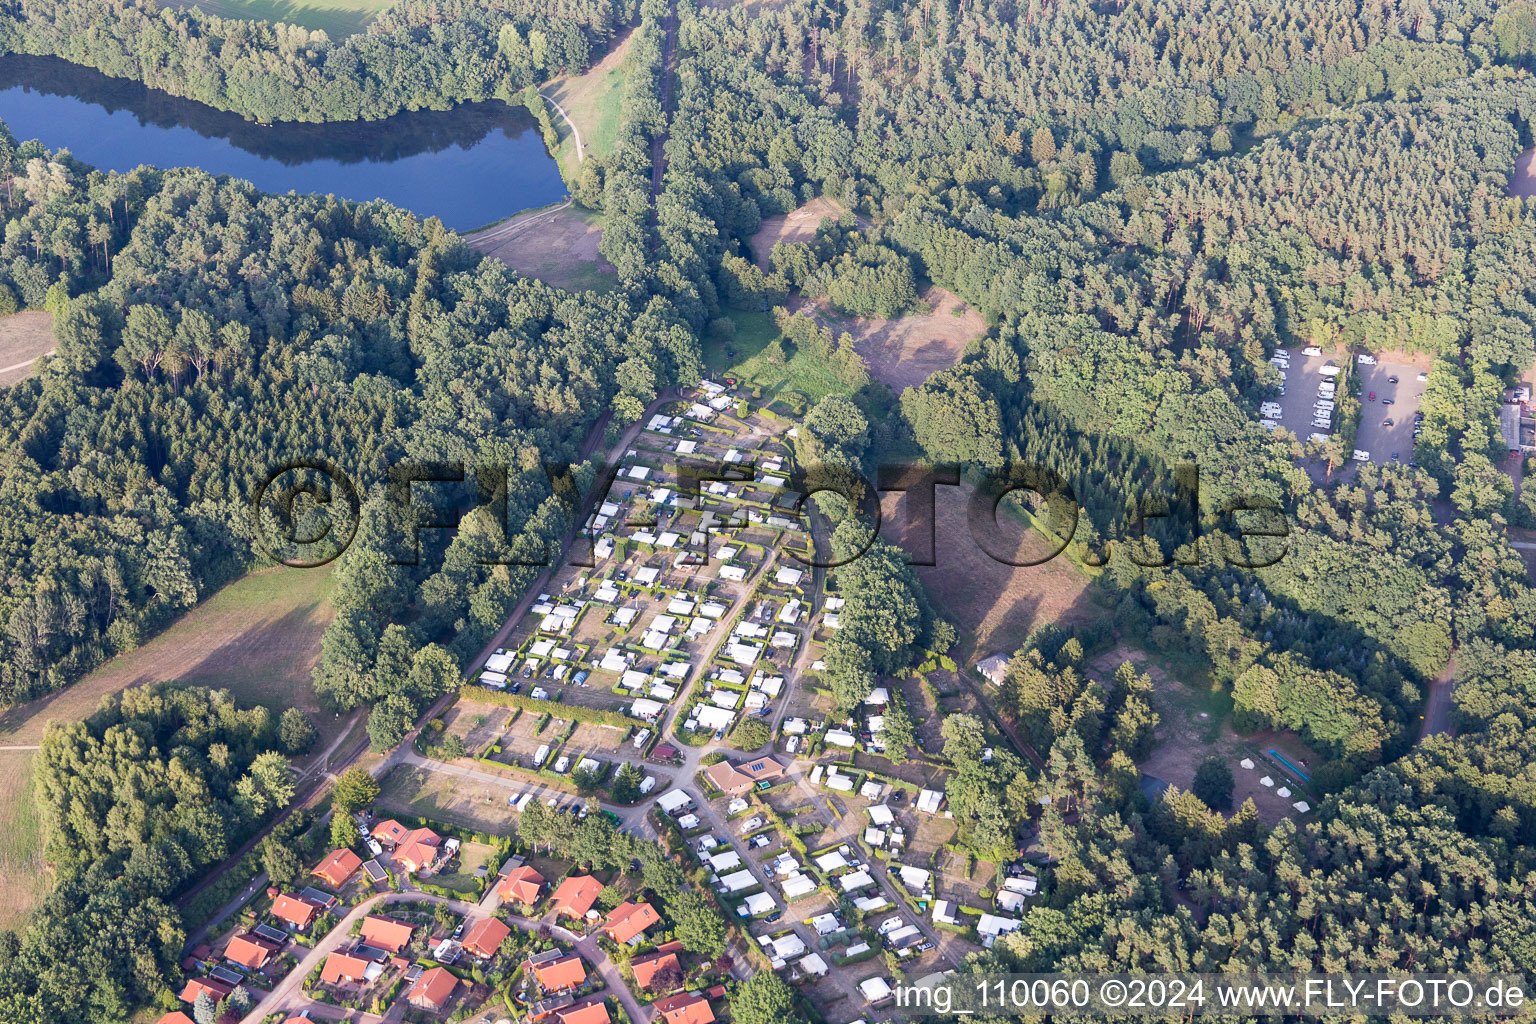 Vue aérienne de Vue des rues et des maisons des quartiers résidentiels à Amelinghausen dans le département Basse-Saxe, Allemagne